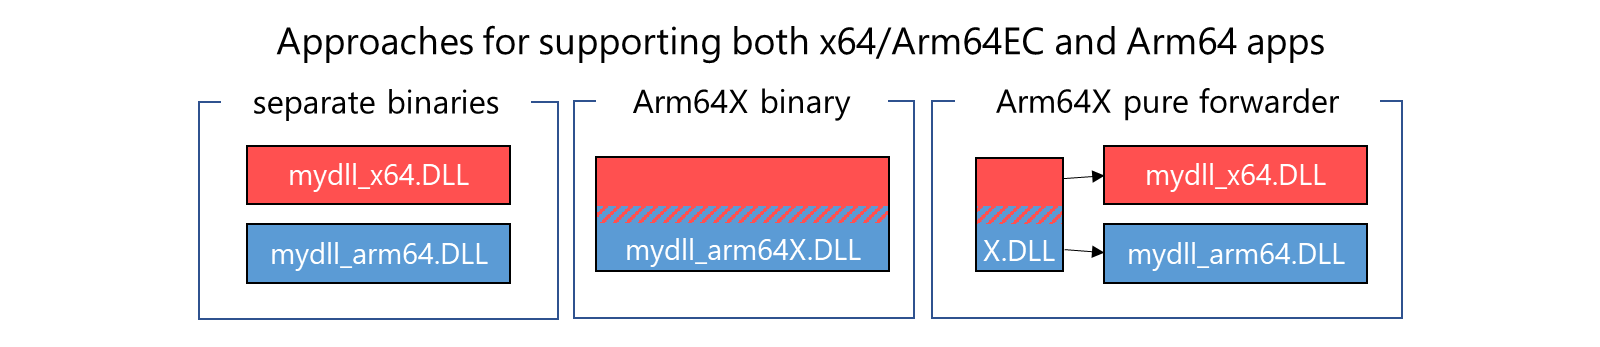 アプリを個別のバイナリでサポートするための 3 つのアプローチ、Arm64x バイナリ、x64/Arm64EC と Arm64 バイナリを組み合わせた Arm64X 純粋フォワーダー